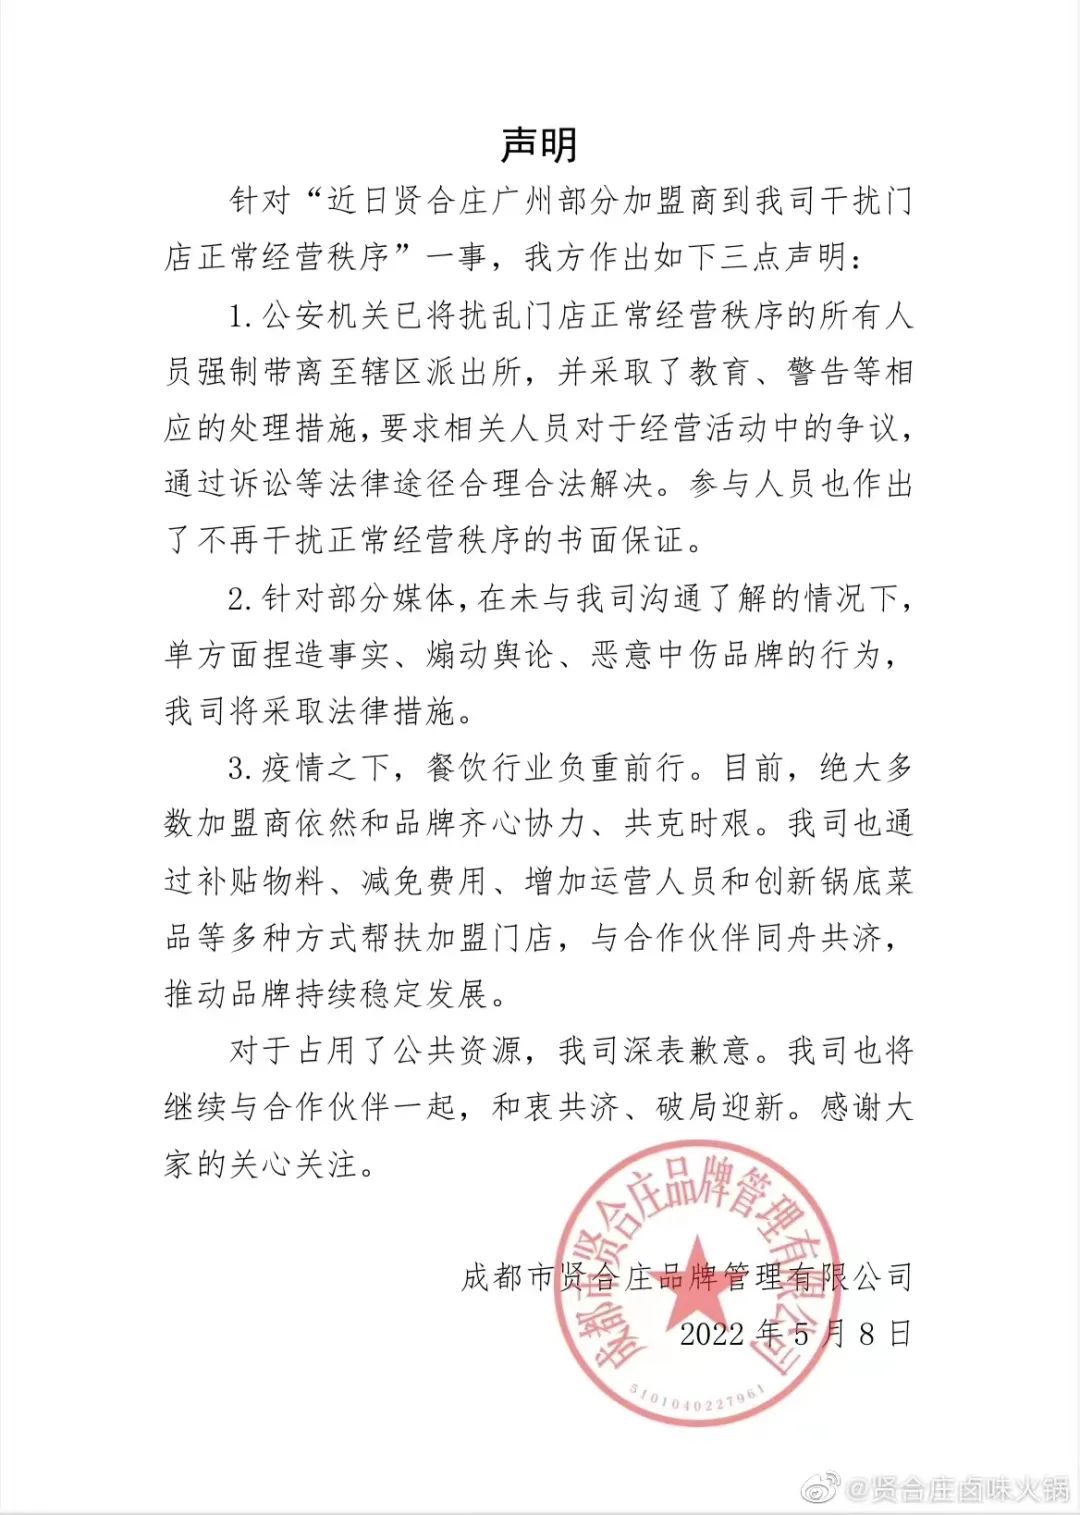 陈赫退股！网红火锅店被加盟商“维权” 门店数量曾超800家